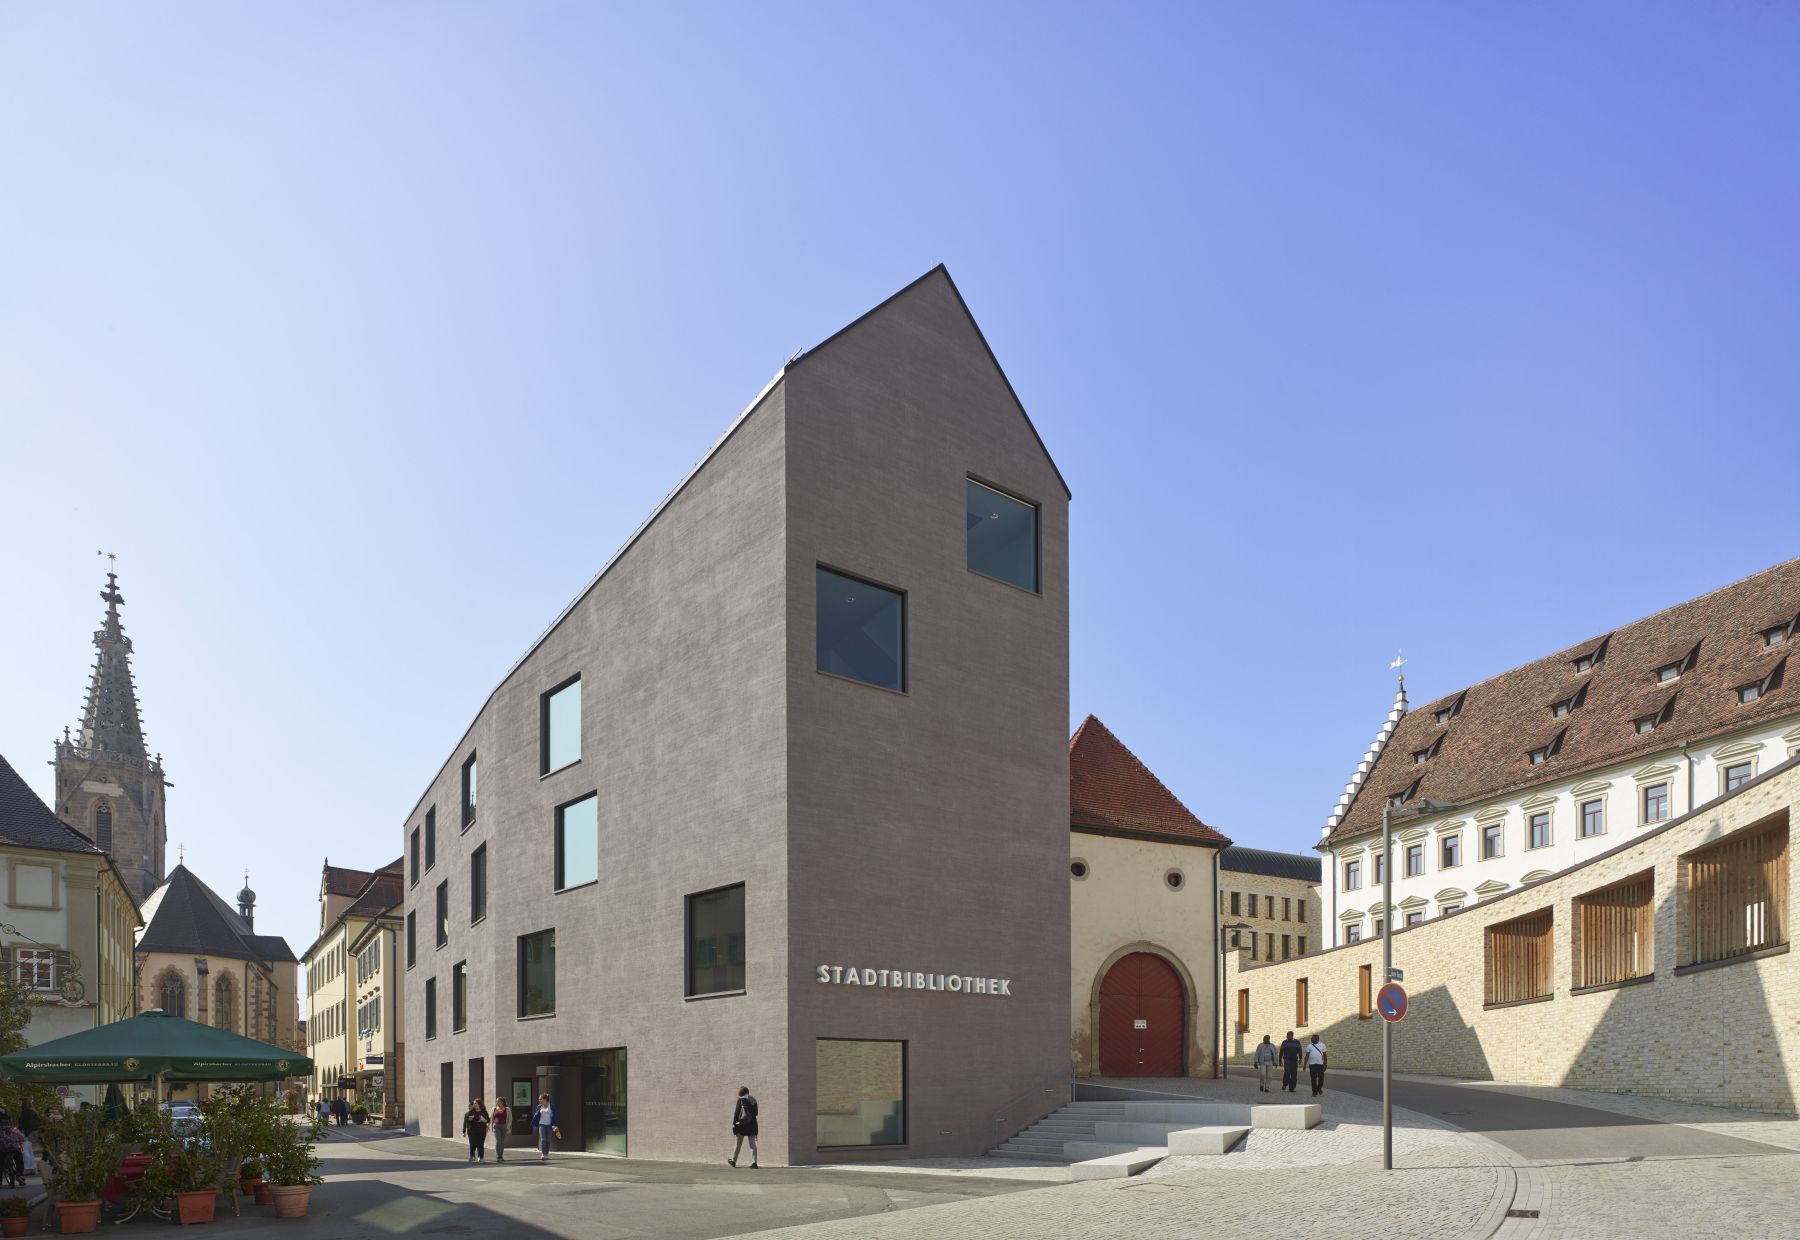 Blick auf eine Straßengabelung in Rottenburg: In der Bildmitte befindet sich der Neubau der Stadtbibliothek, links von ihr geht es in die Fußgängerzone, rechts von ihr führt eine Straße zum Bischöflichen Ordinariat.